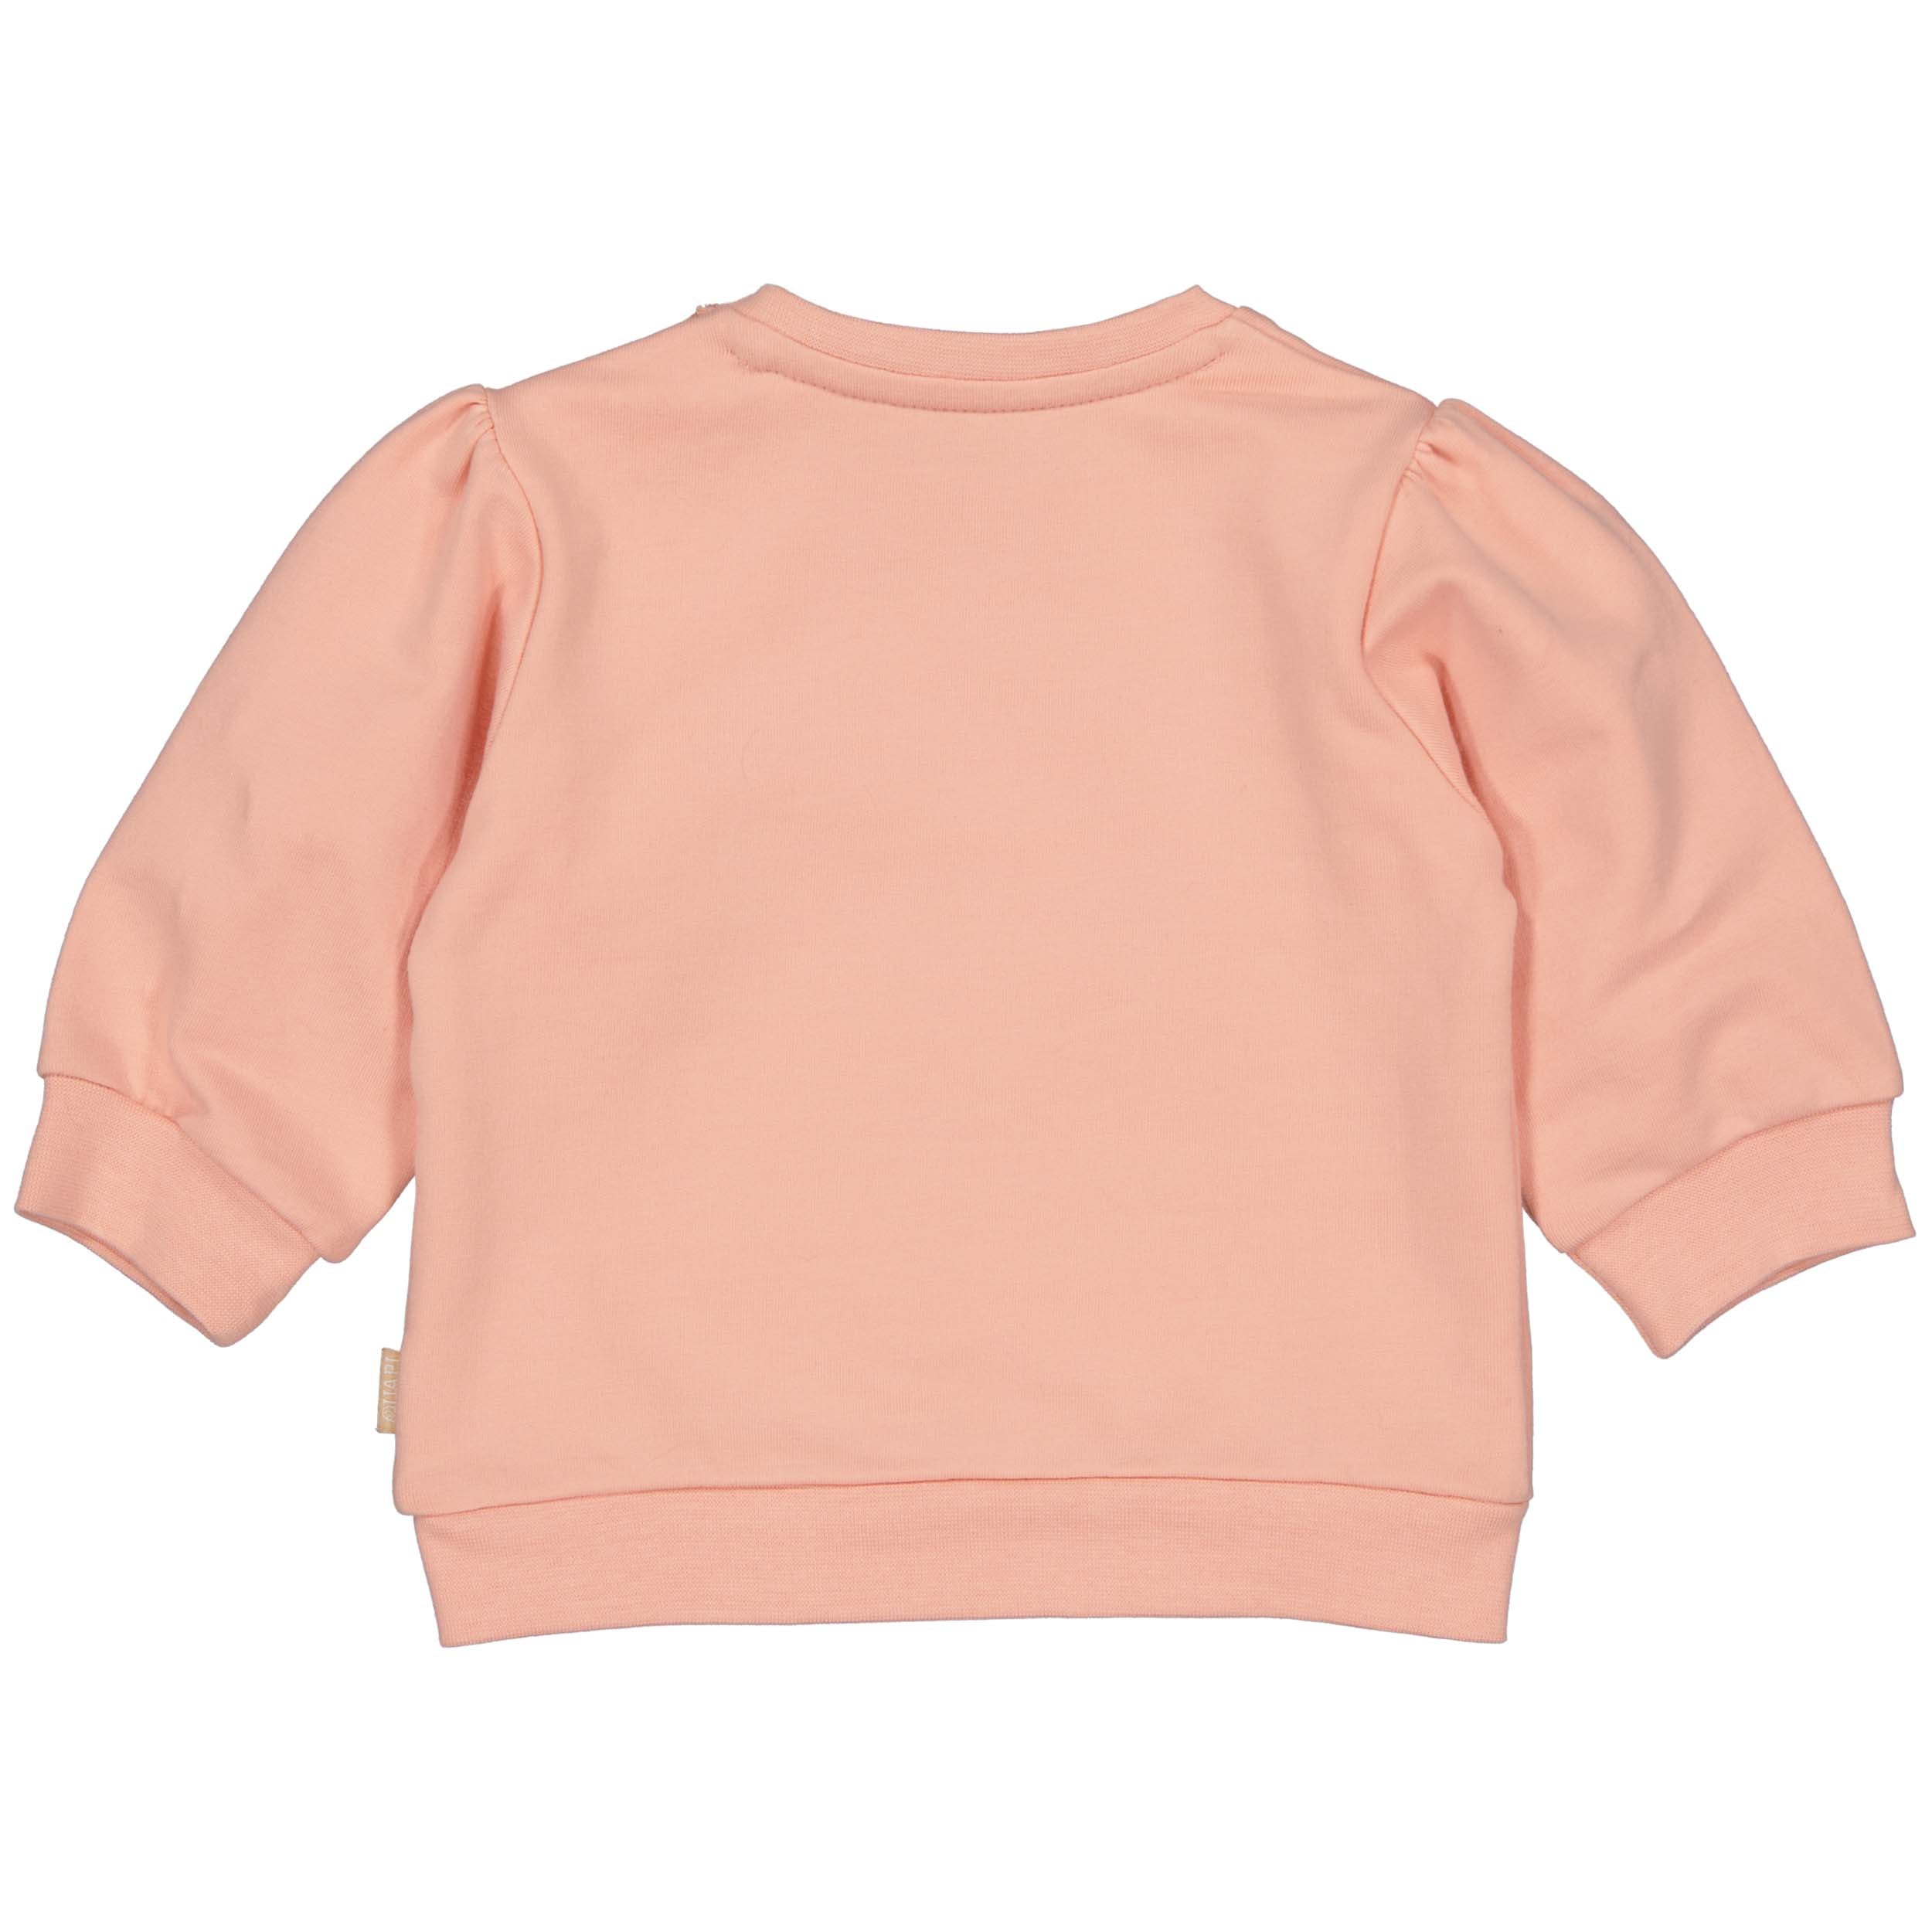 Meisjes Sweater CELIZEQNBW23 van Quapi Newborn in de kleur Pink Peach in maat 68.